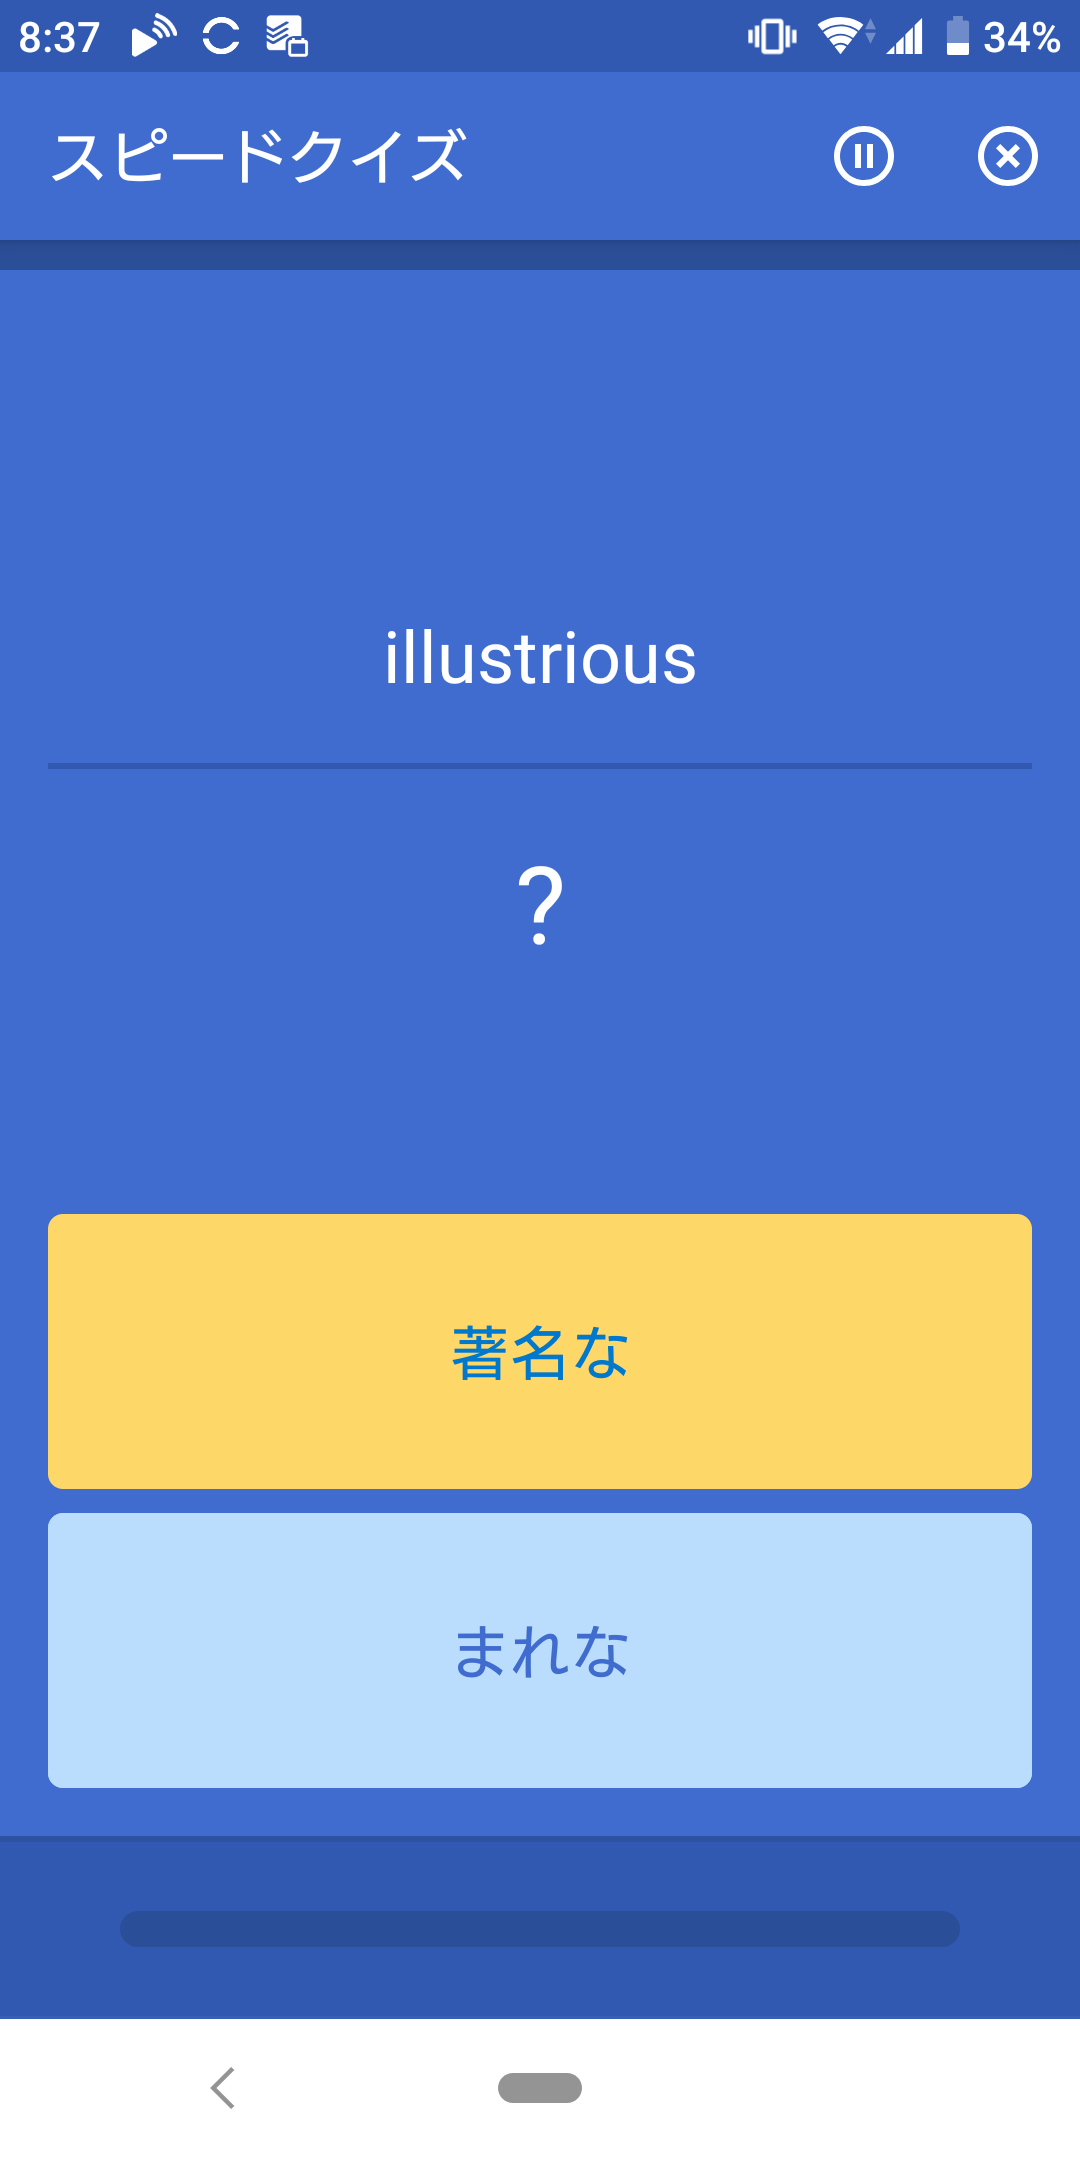 [用例あり]”illustrious”(顕著系)の意味定着!!/英検1級英単語